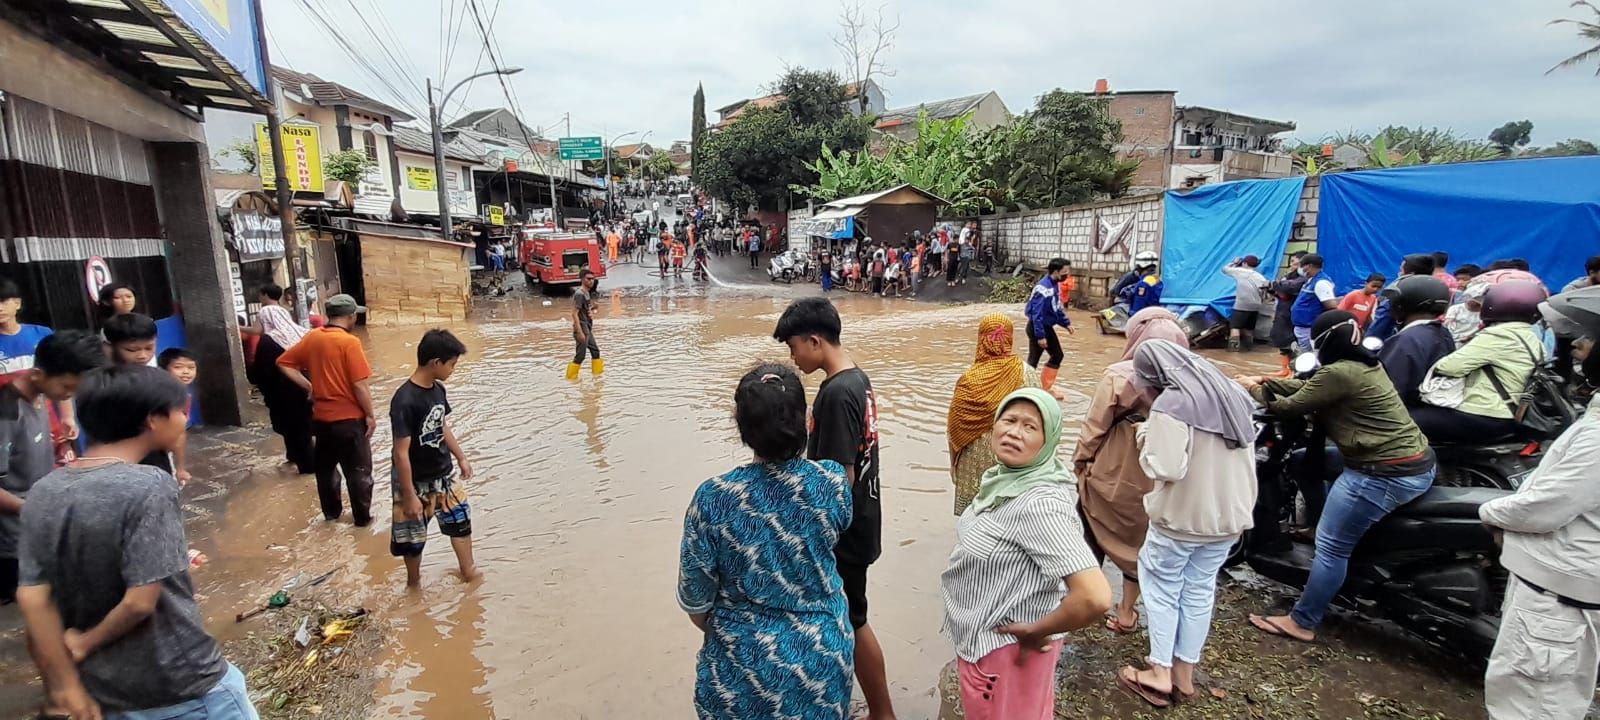 Warga menyaksikan evakuasi kendaraan yang terendam banjir di Jalan Anggaraja Kelurahan Cipageran Kecamatan Cimahi Utara Kota Cimahi usai sejumlah wilayah di Kota Cimahi diguyur hujan deras selama 1 jam.